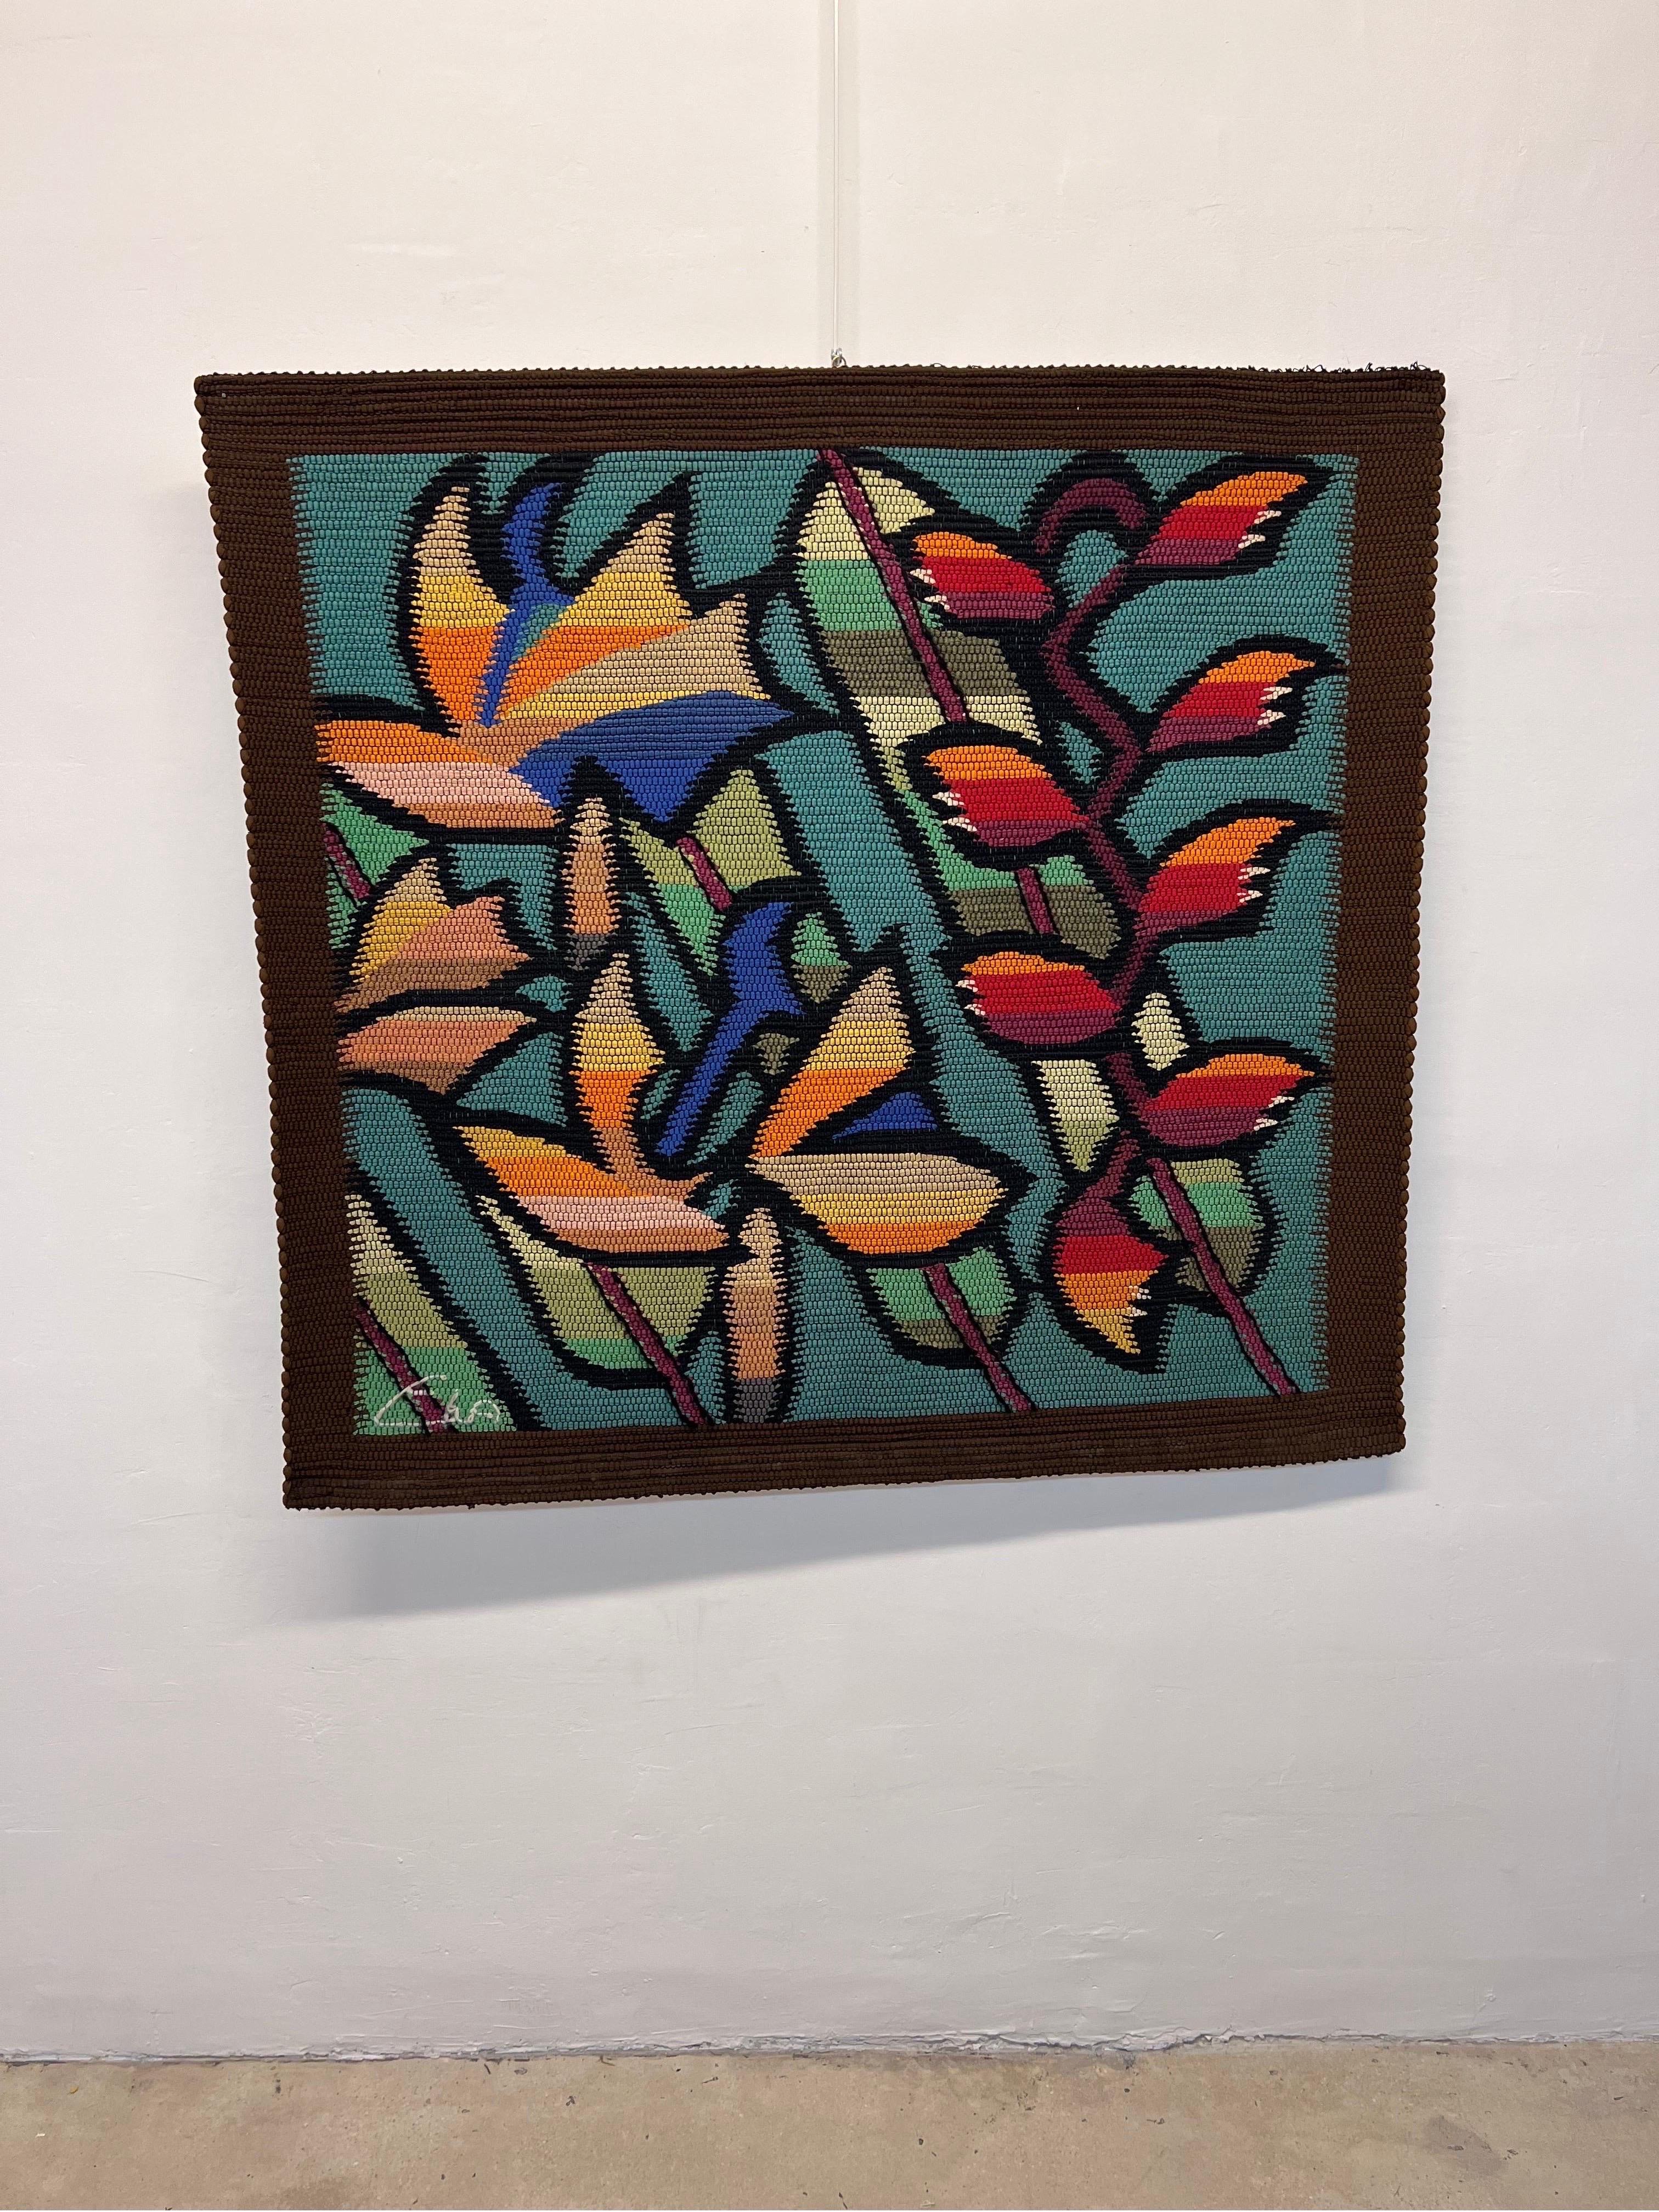 Floraler Wandteppich von Eila Ampula aus Faserkunst, handgefertigt in Brasilien, 1980er Jahre.

Eila Ampula war eine bekannte brasilianische Künstlerin, die sich auf die Gestaltung von Wandteppichen spezialisiert hatte. Ihre Arbeiten wurden in